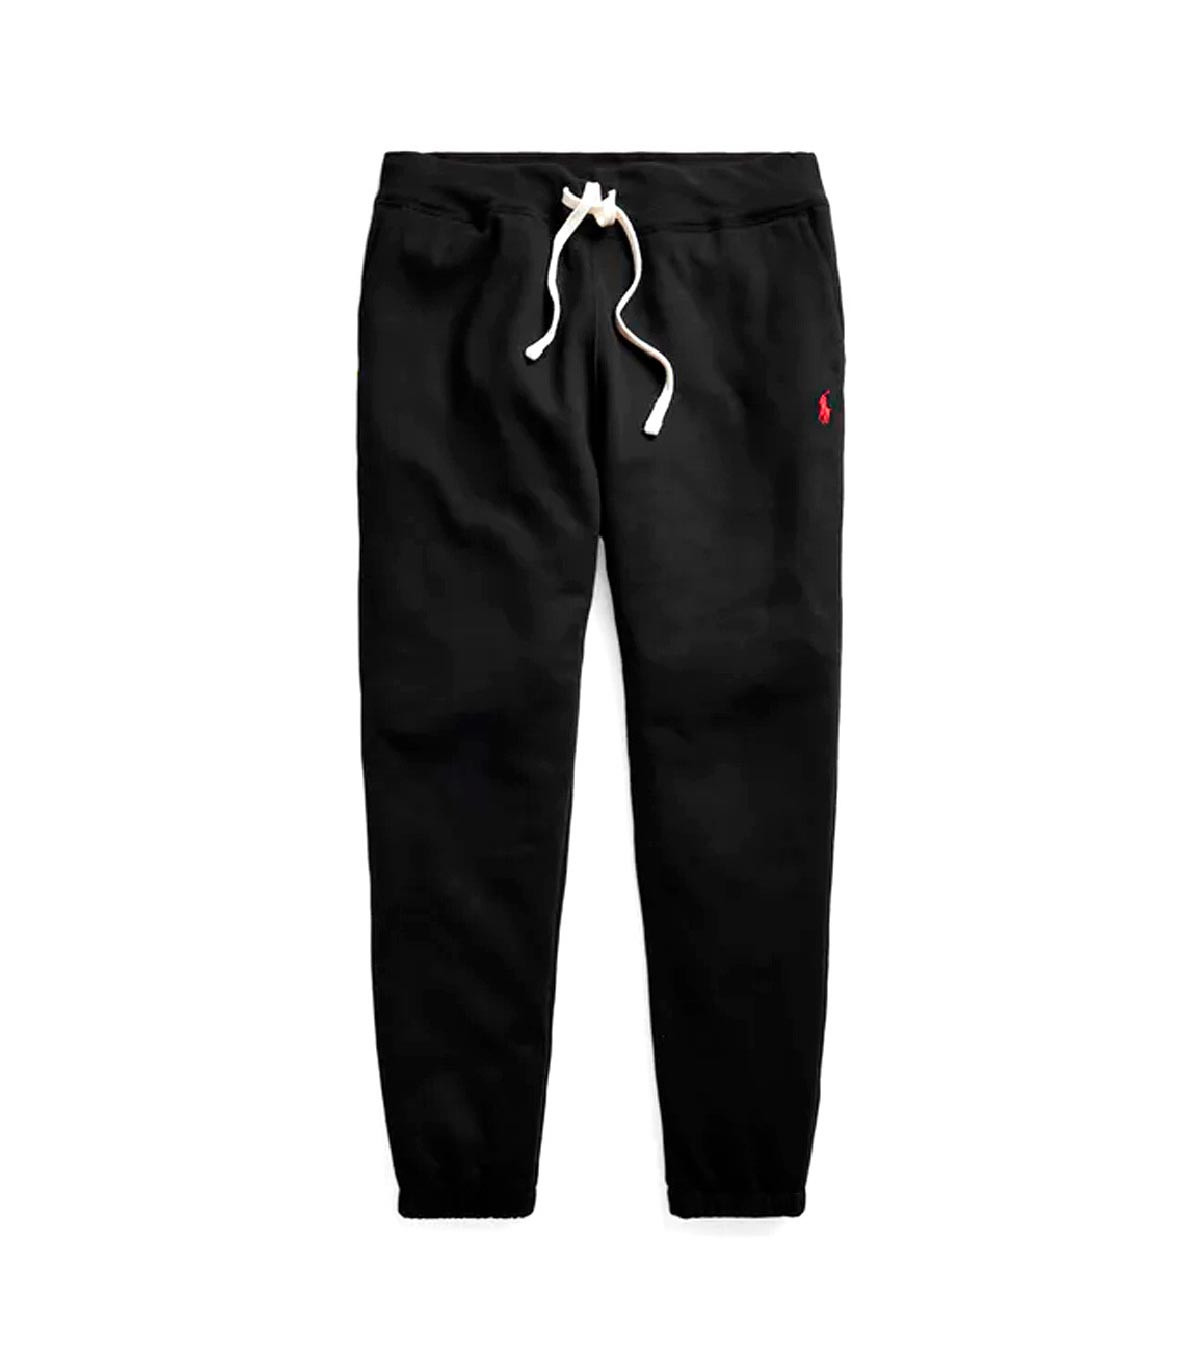 Polo Ralph Lauren - Pantalón Cabin Fleece Jogging Pants - Negro